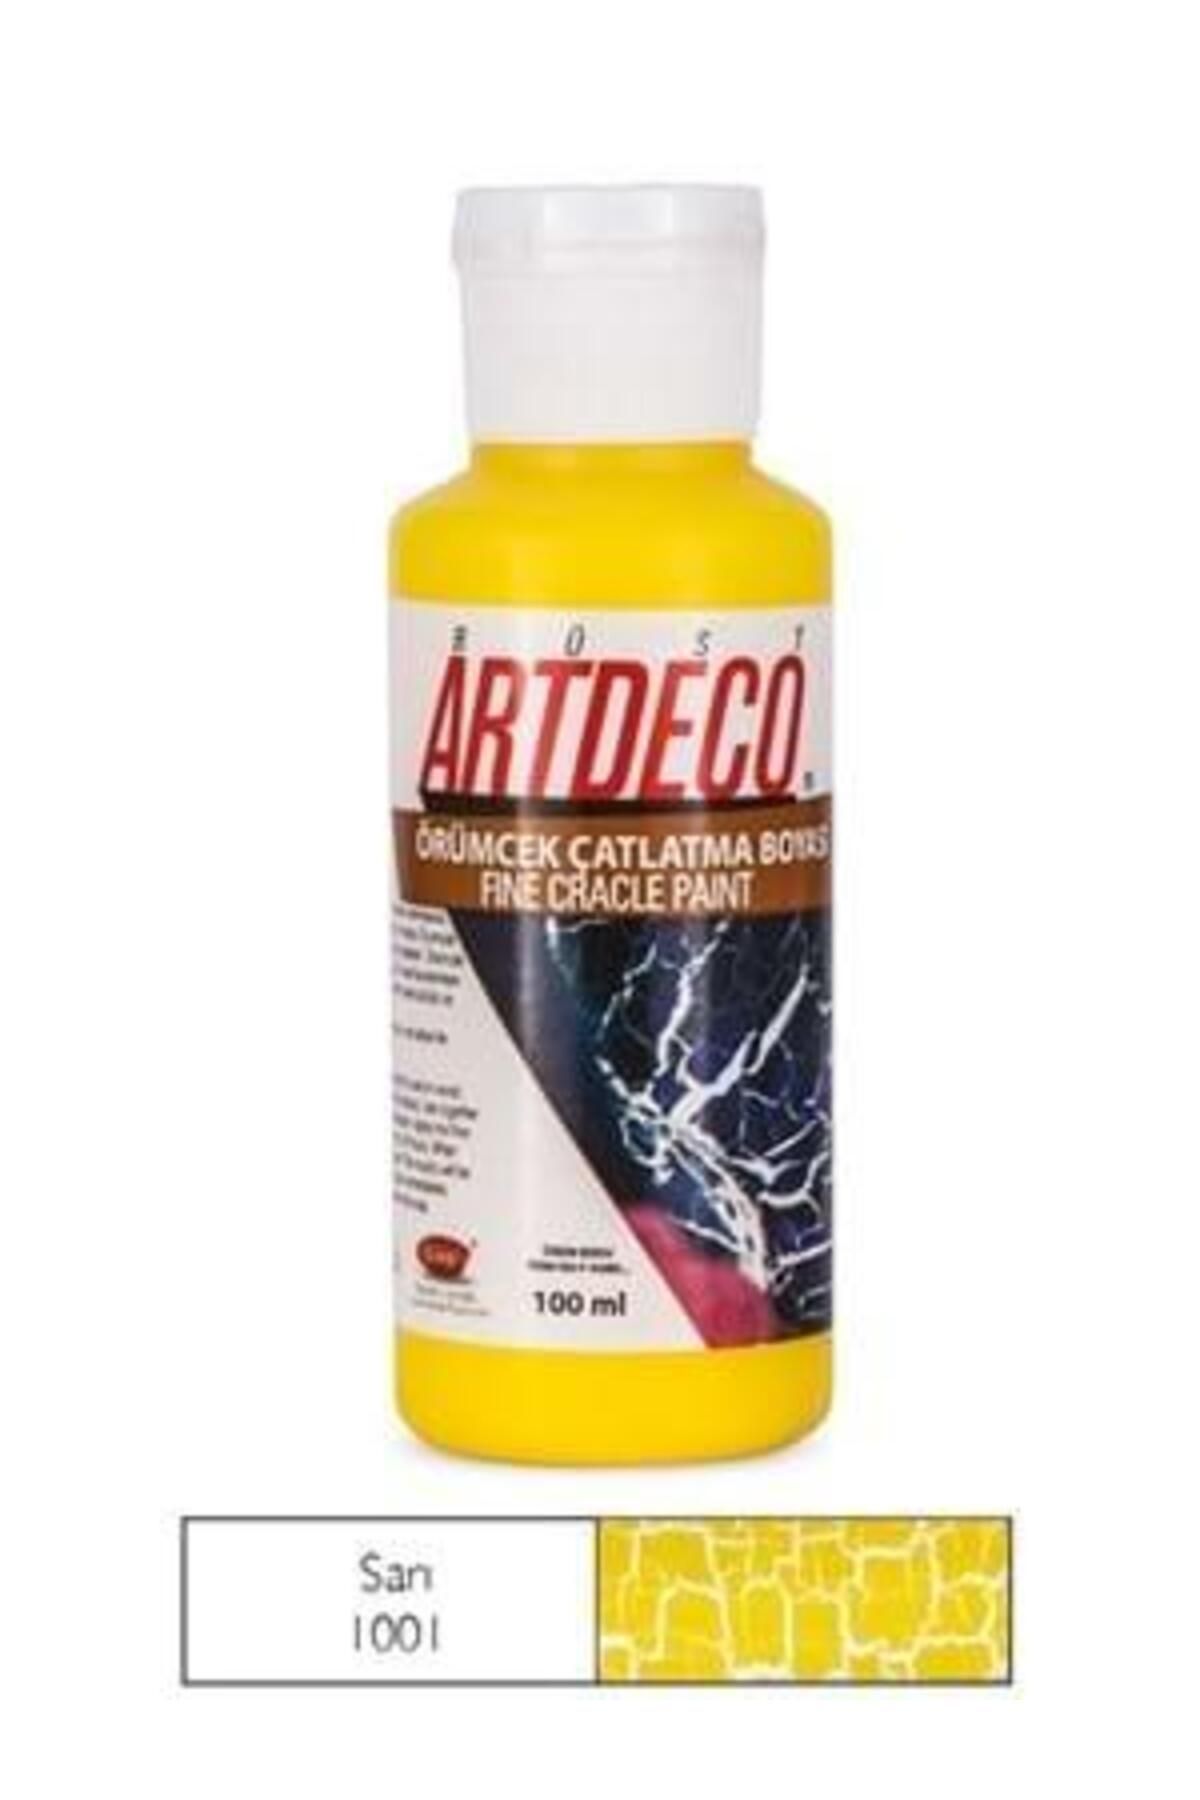 Artdeco Örümcek Çatlatma Boyası 100 ml Sarı 1001